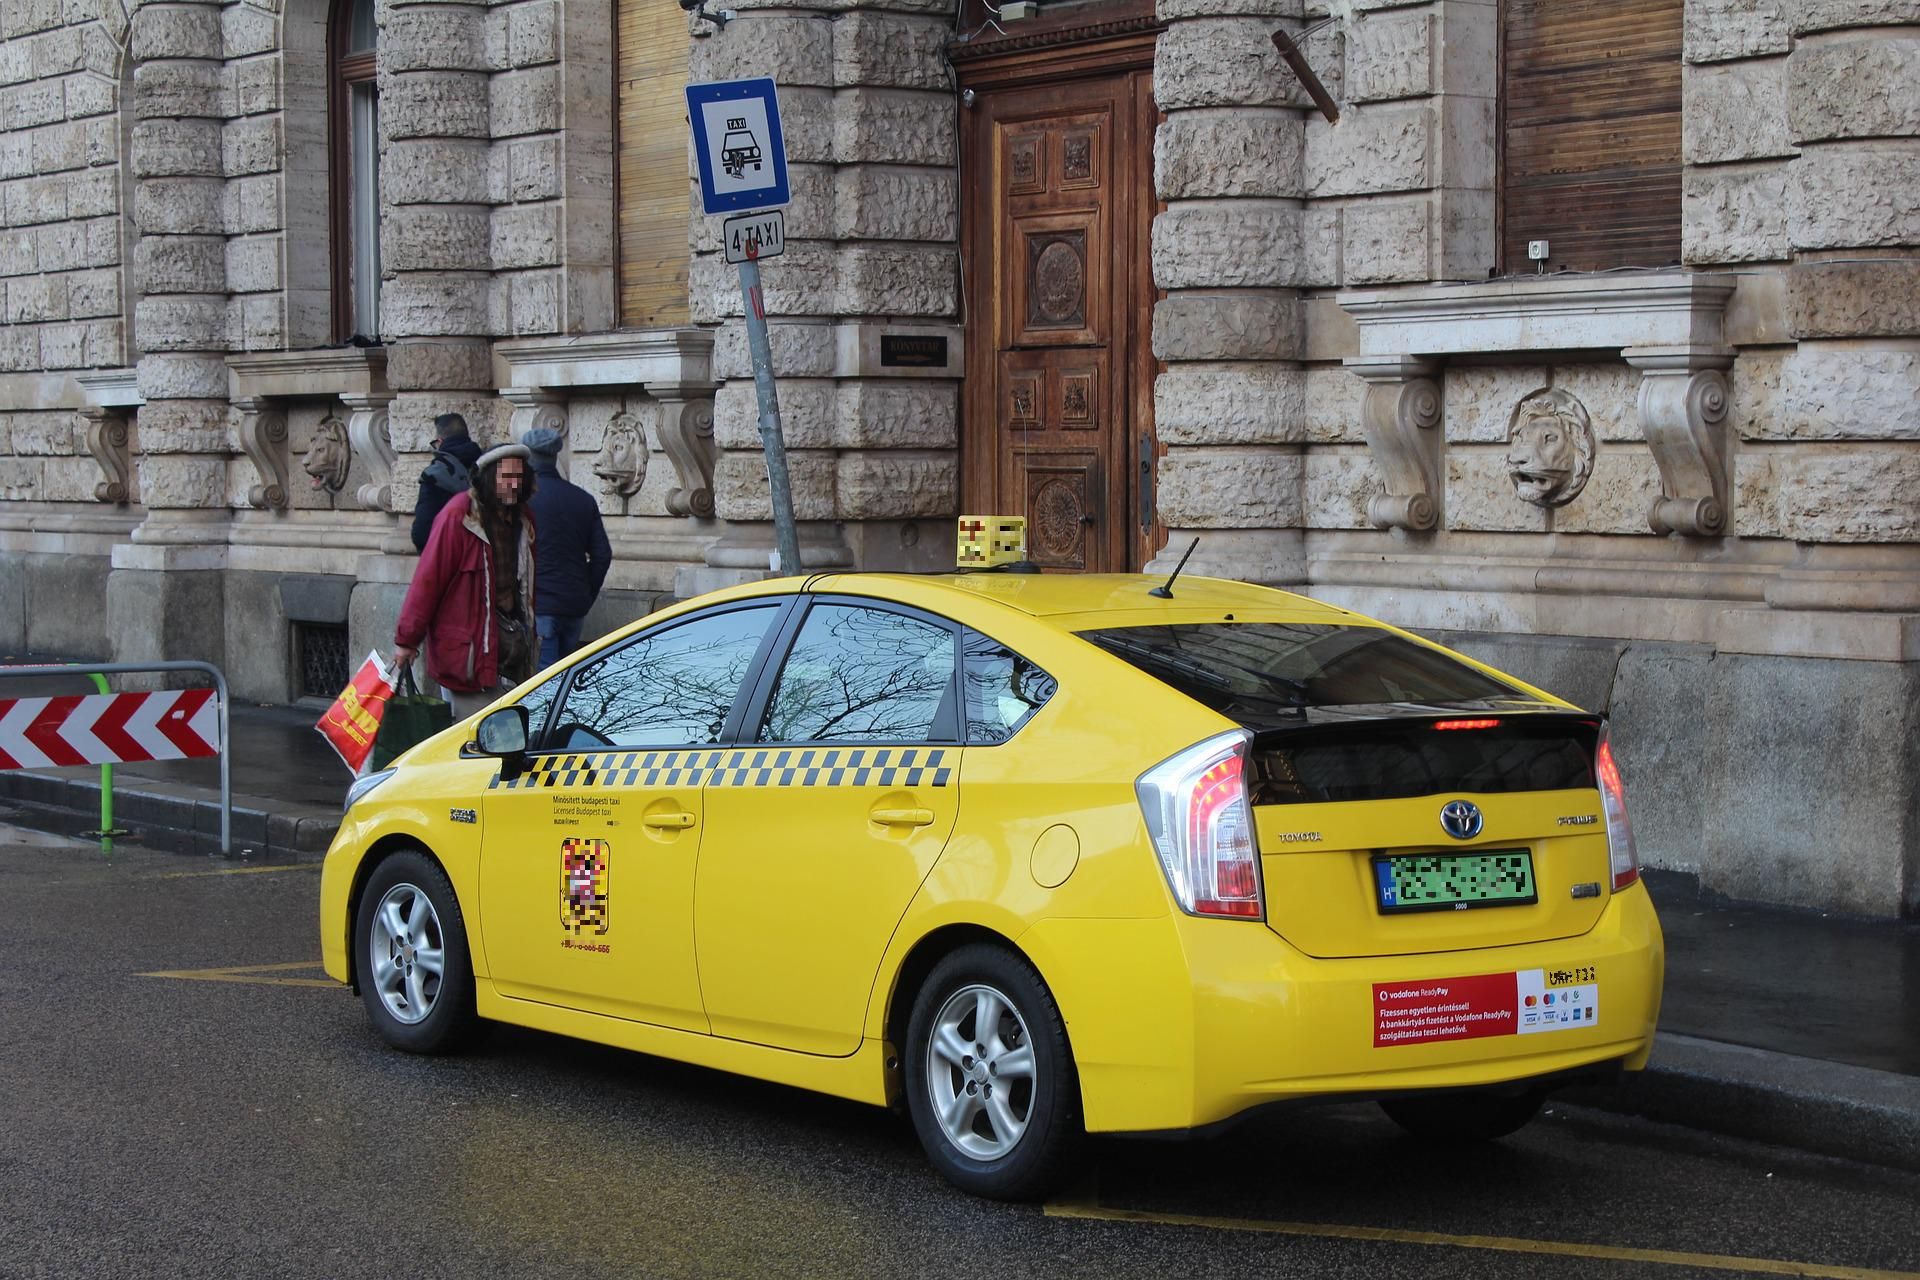 Fokozottan ellenőrzi a fővárosi kormányhivatal a taxisokat az atlétikai vb alatt is